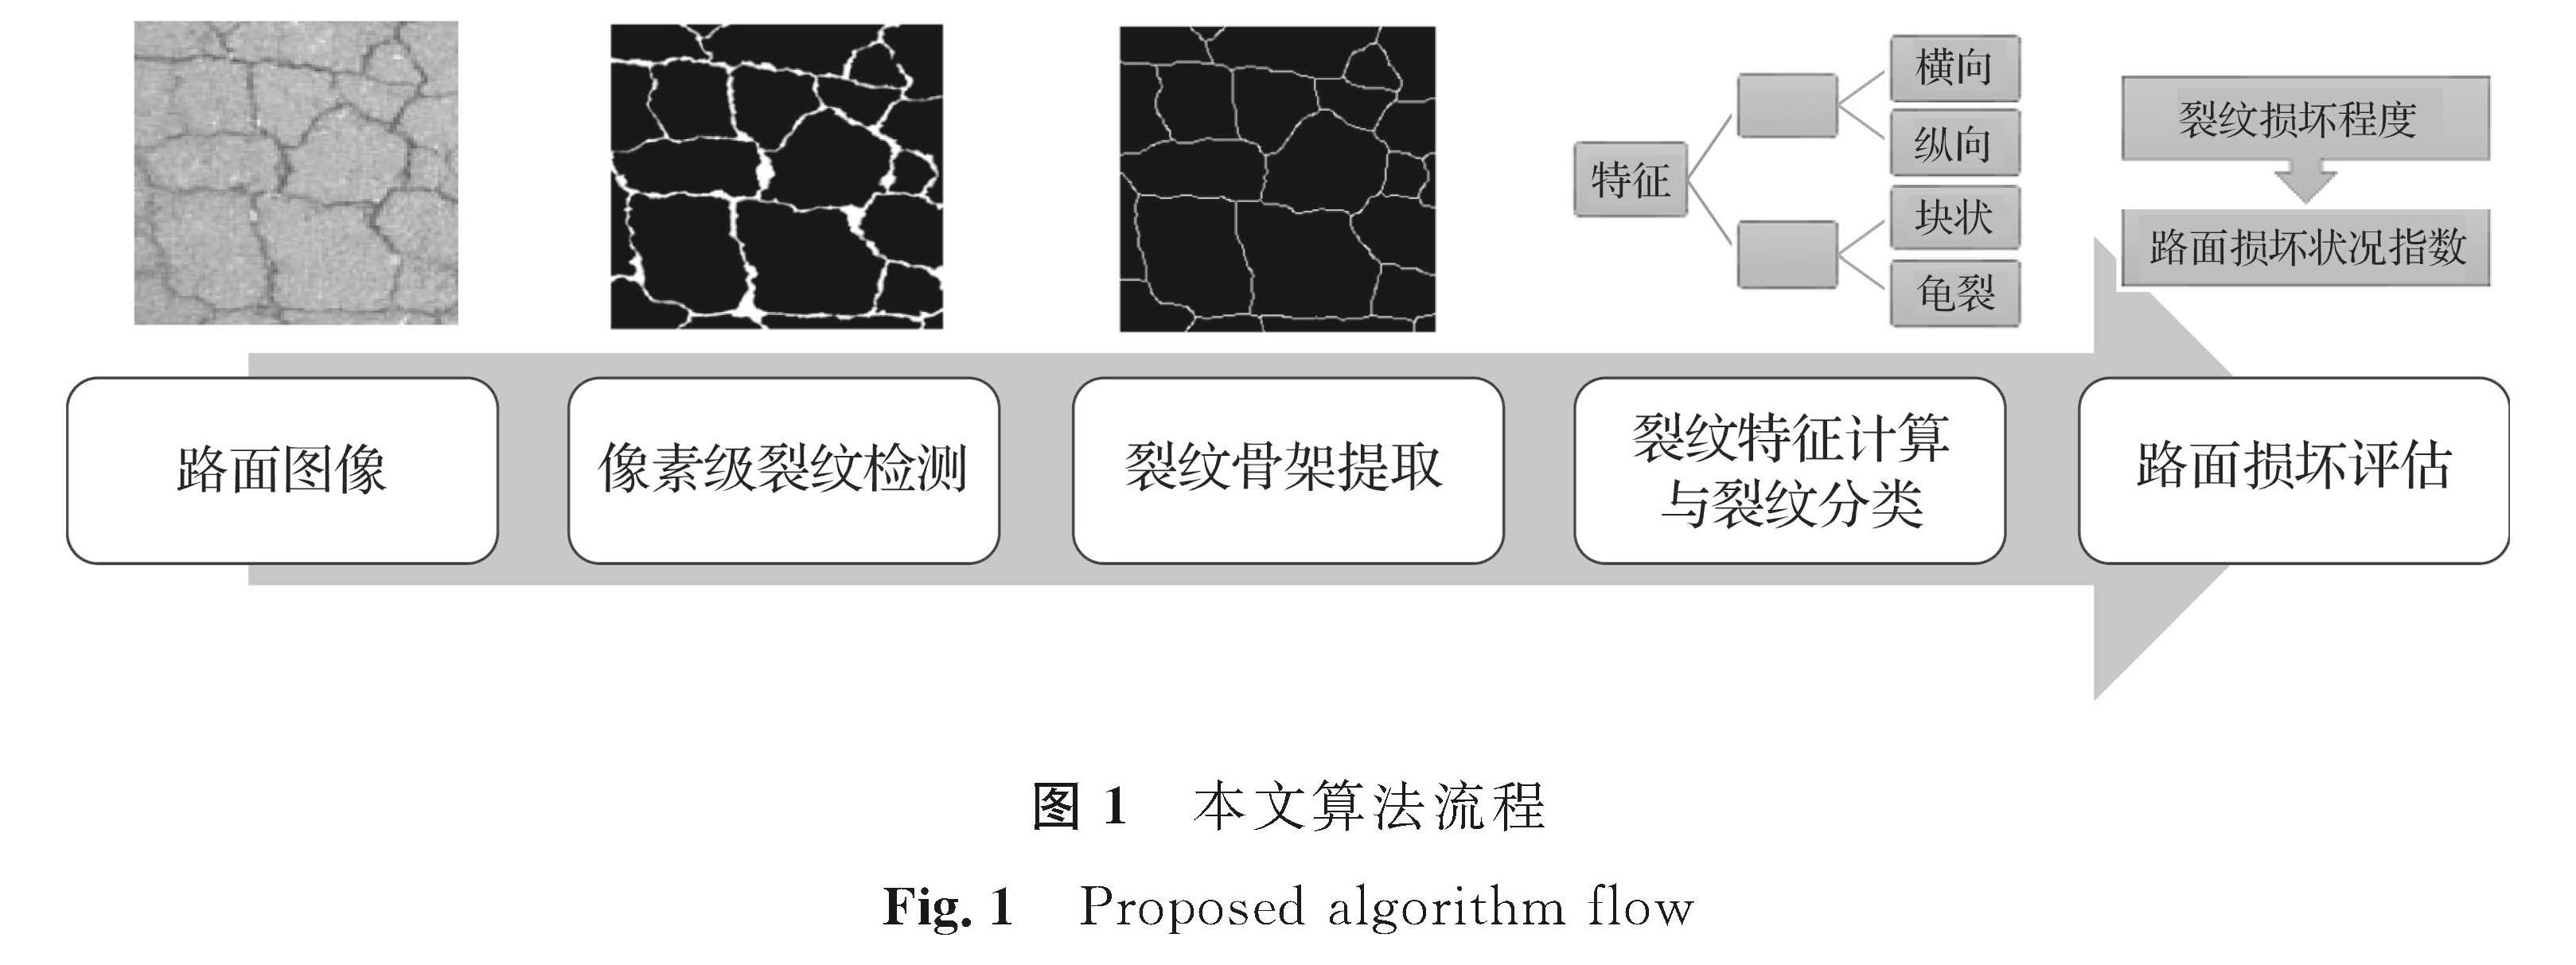 图1 本文算法流程<br/>Fig.1 Proposed algorithm flow